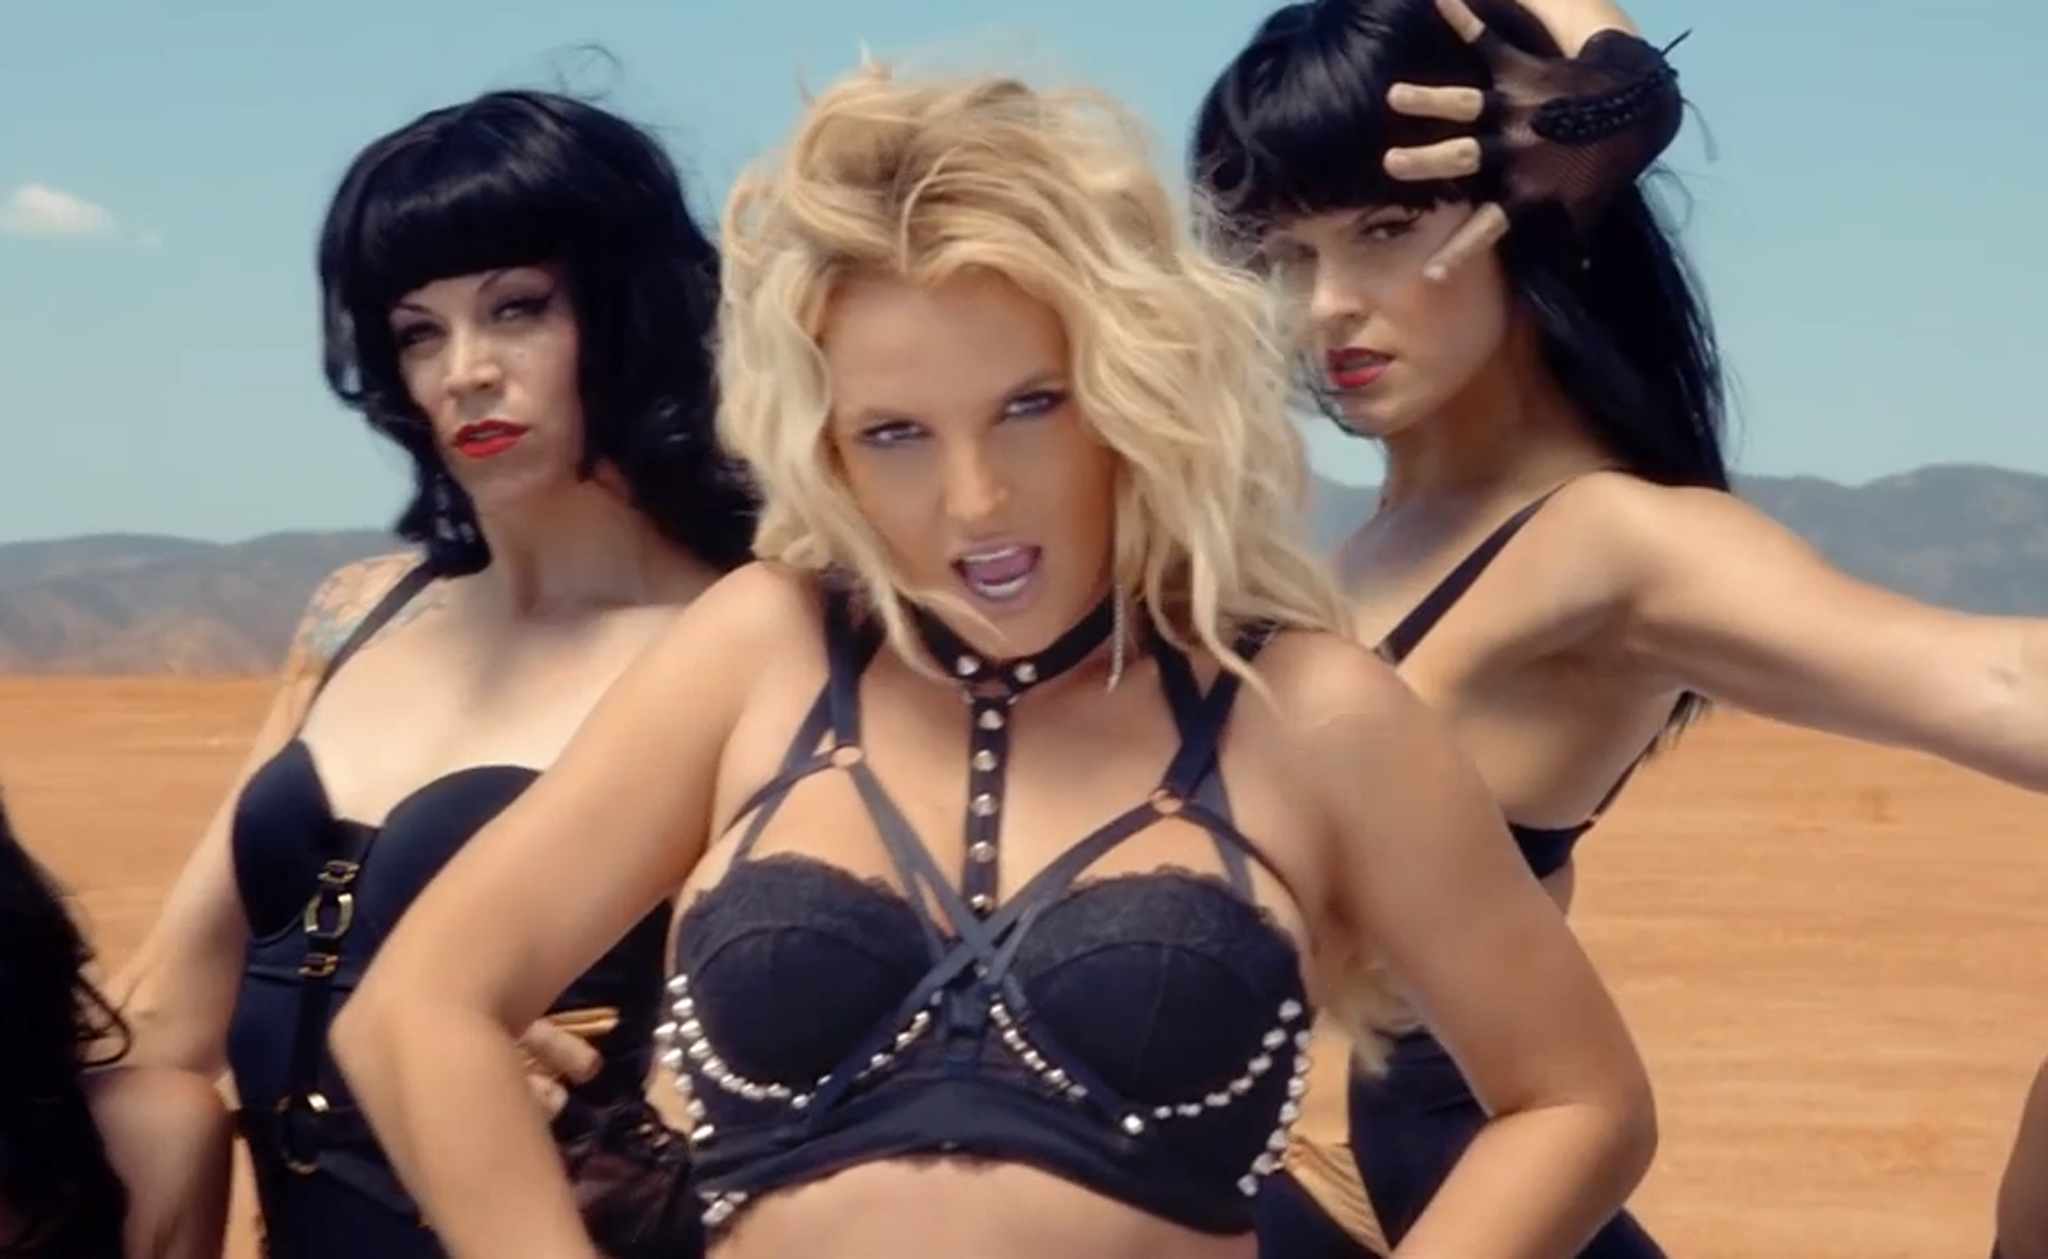 Britney Spears feels pressured to make hypersexualised music videos, here performing in "Work B***ch"